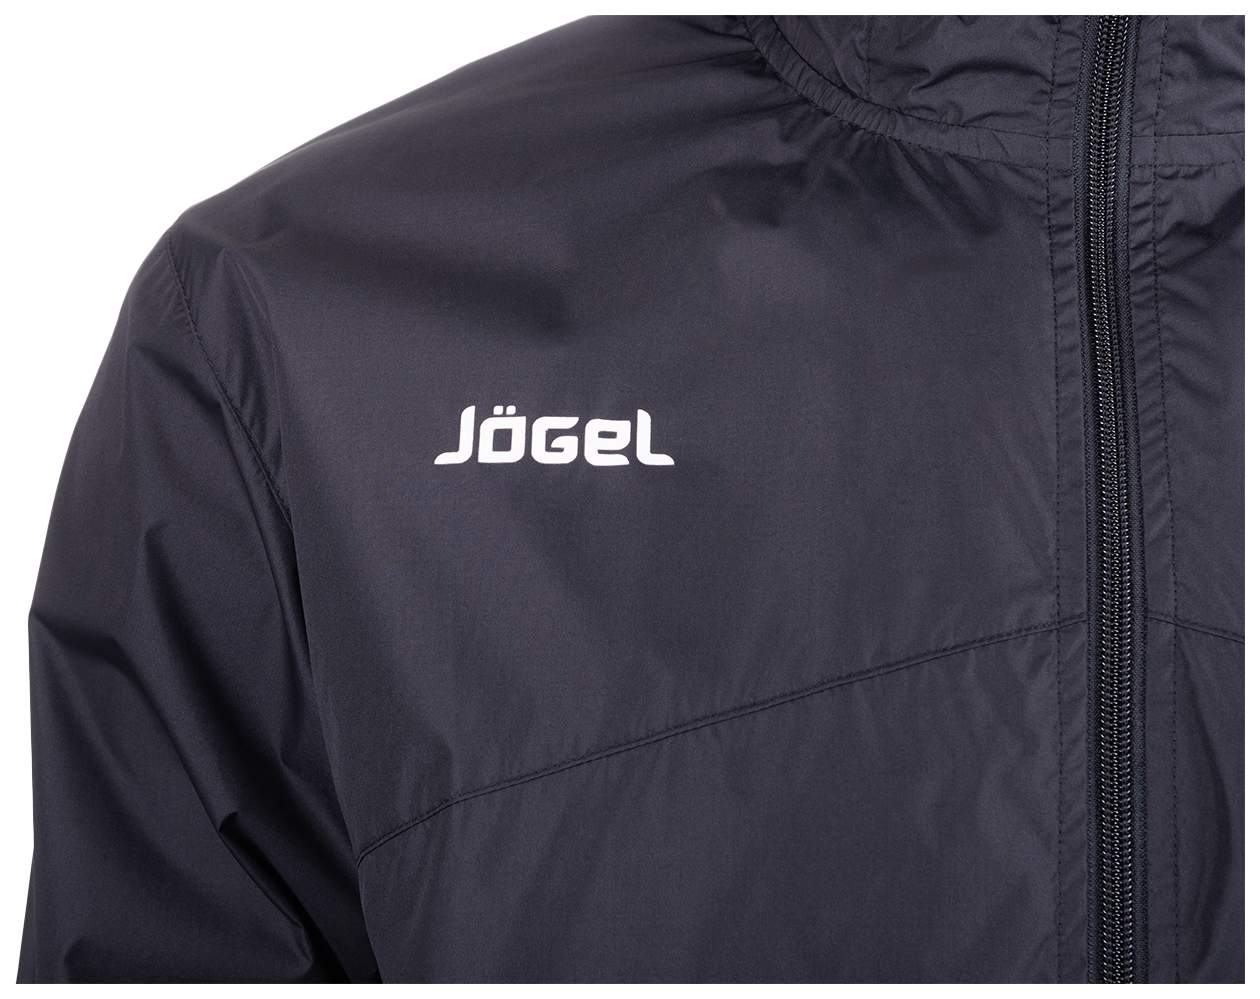 Jogel купить форму. Куртка Jogel Division. Ветровка Jogel размер s черный. Jogel Division ветровка. Куртка Jogel размер yl, черный.